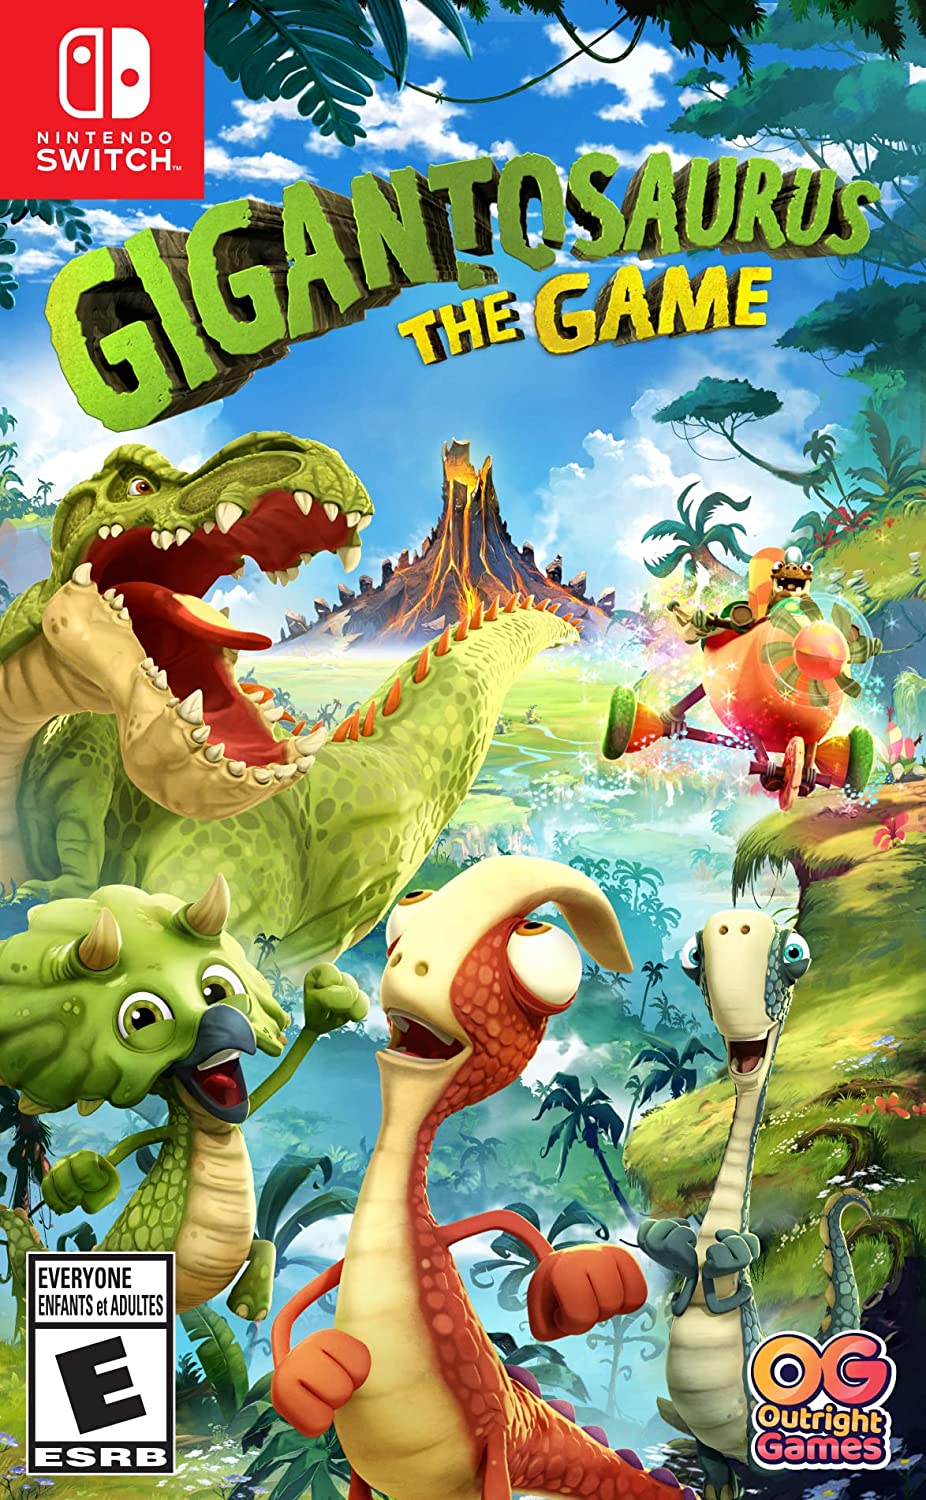 Gigantosaurus The Game - Nintendo Game